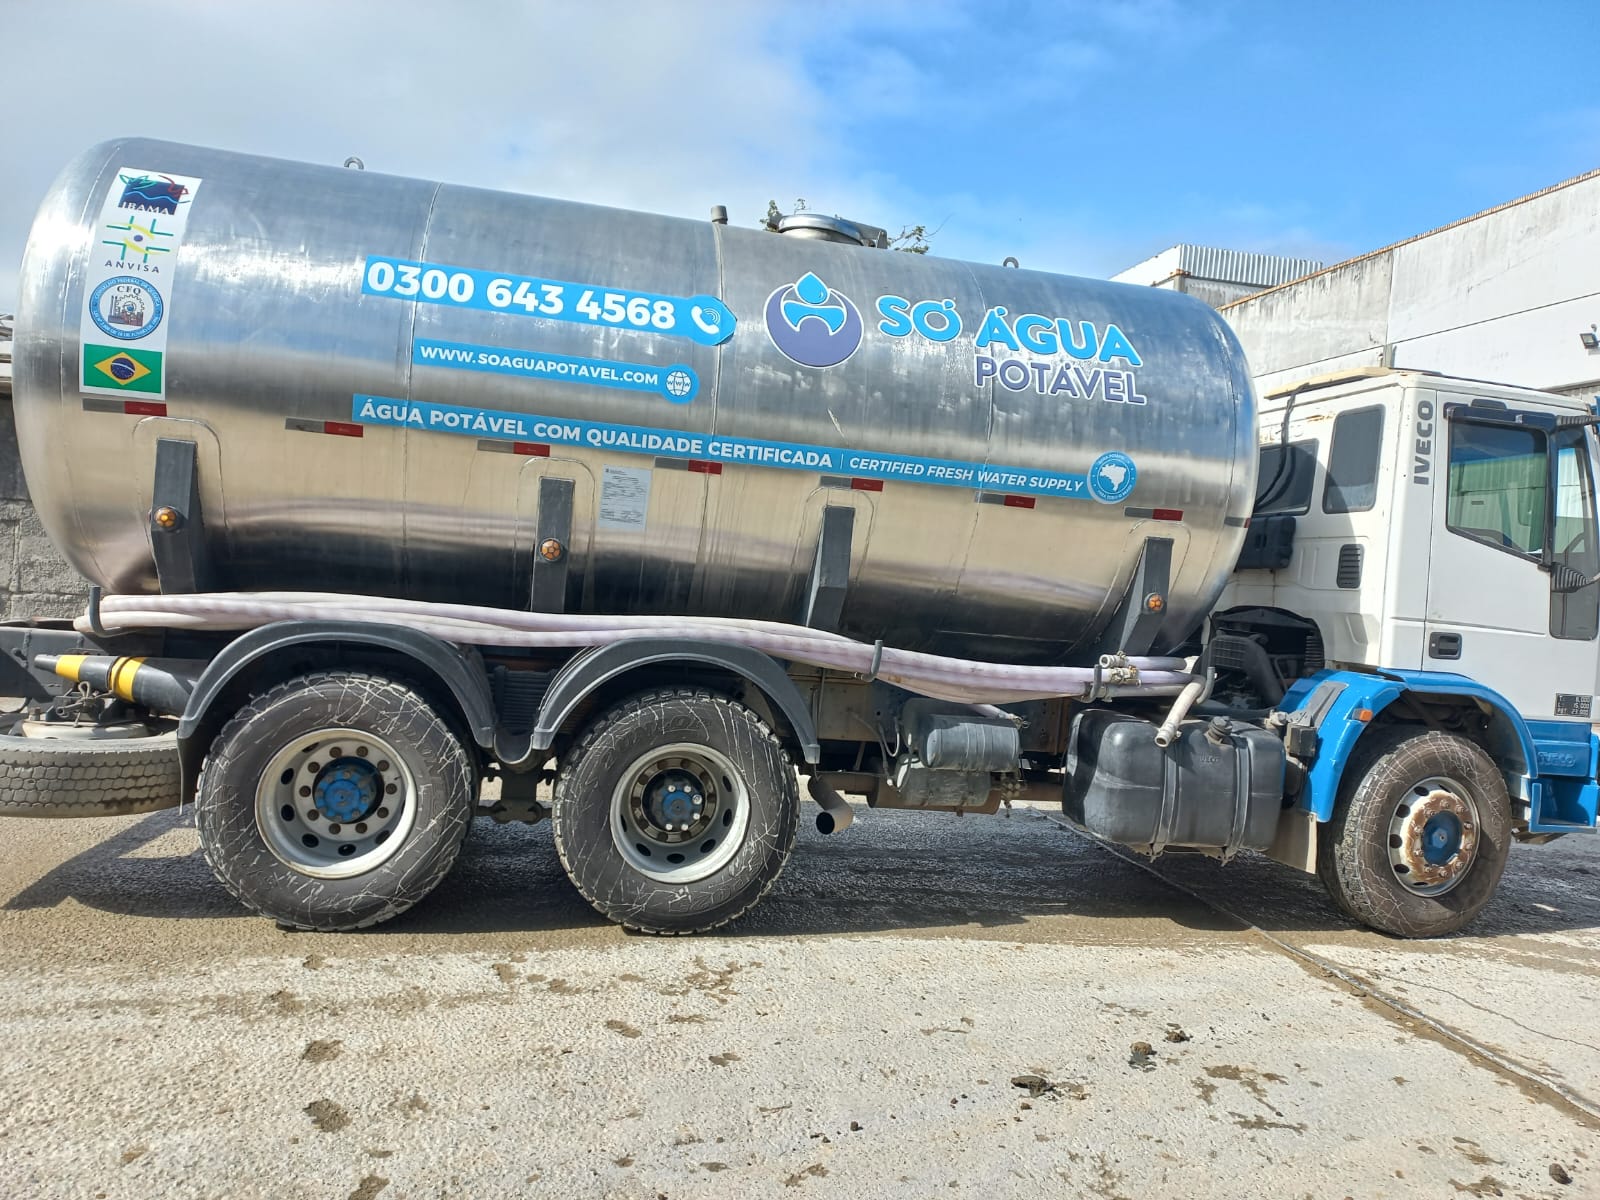 Caminhão pipa de transporte de água potável #caminhaopipabrusque #transportedeaguapotavelbrusque #aguapotavelbrusque #carropipabrusque